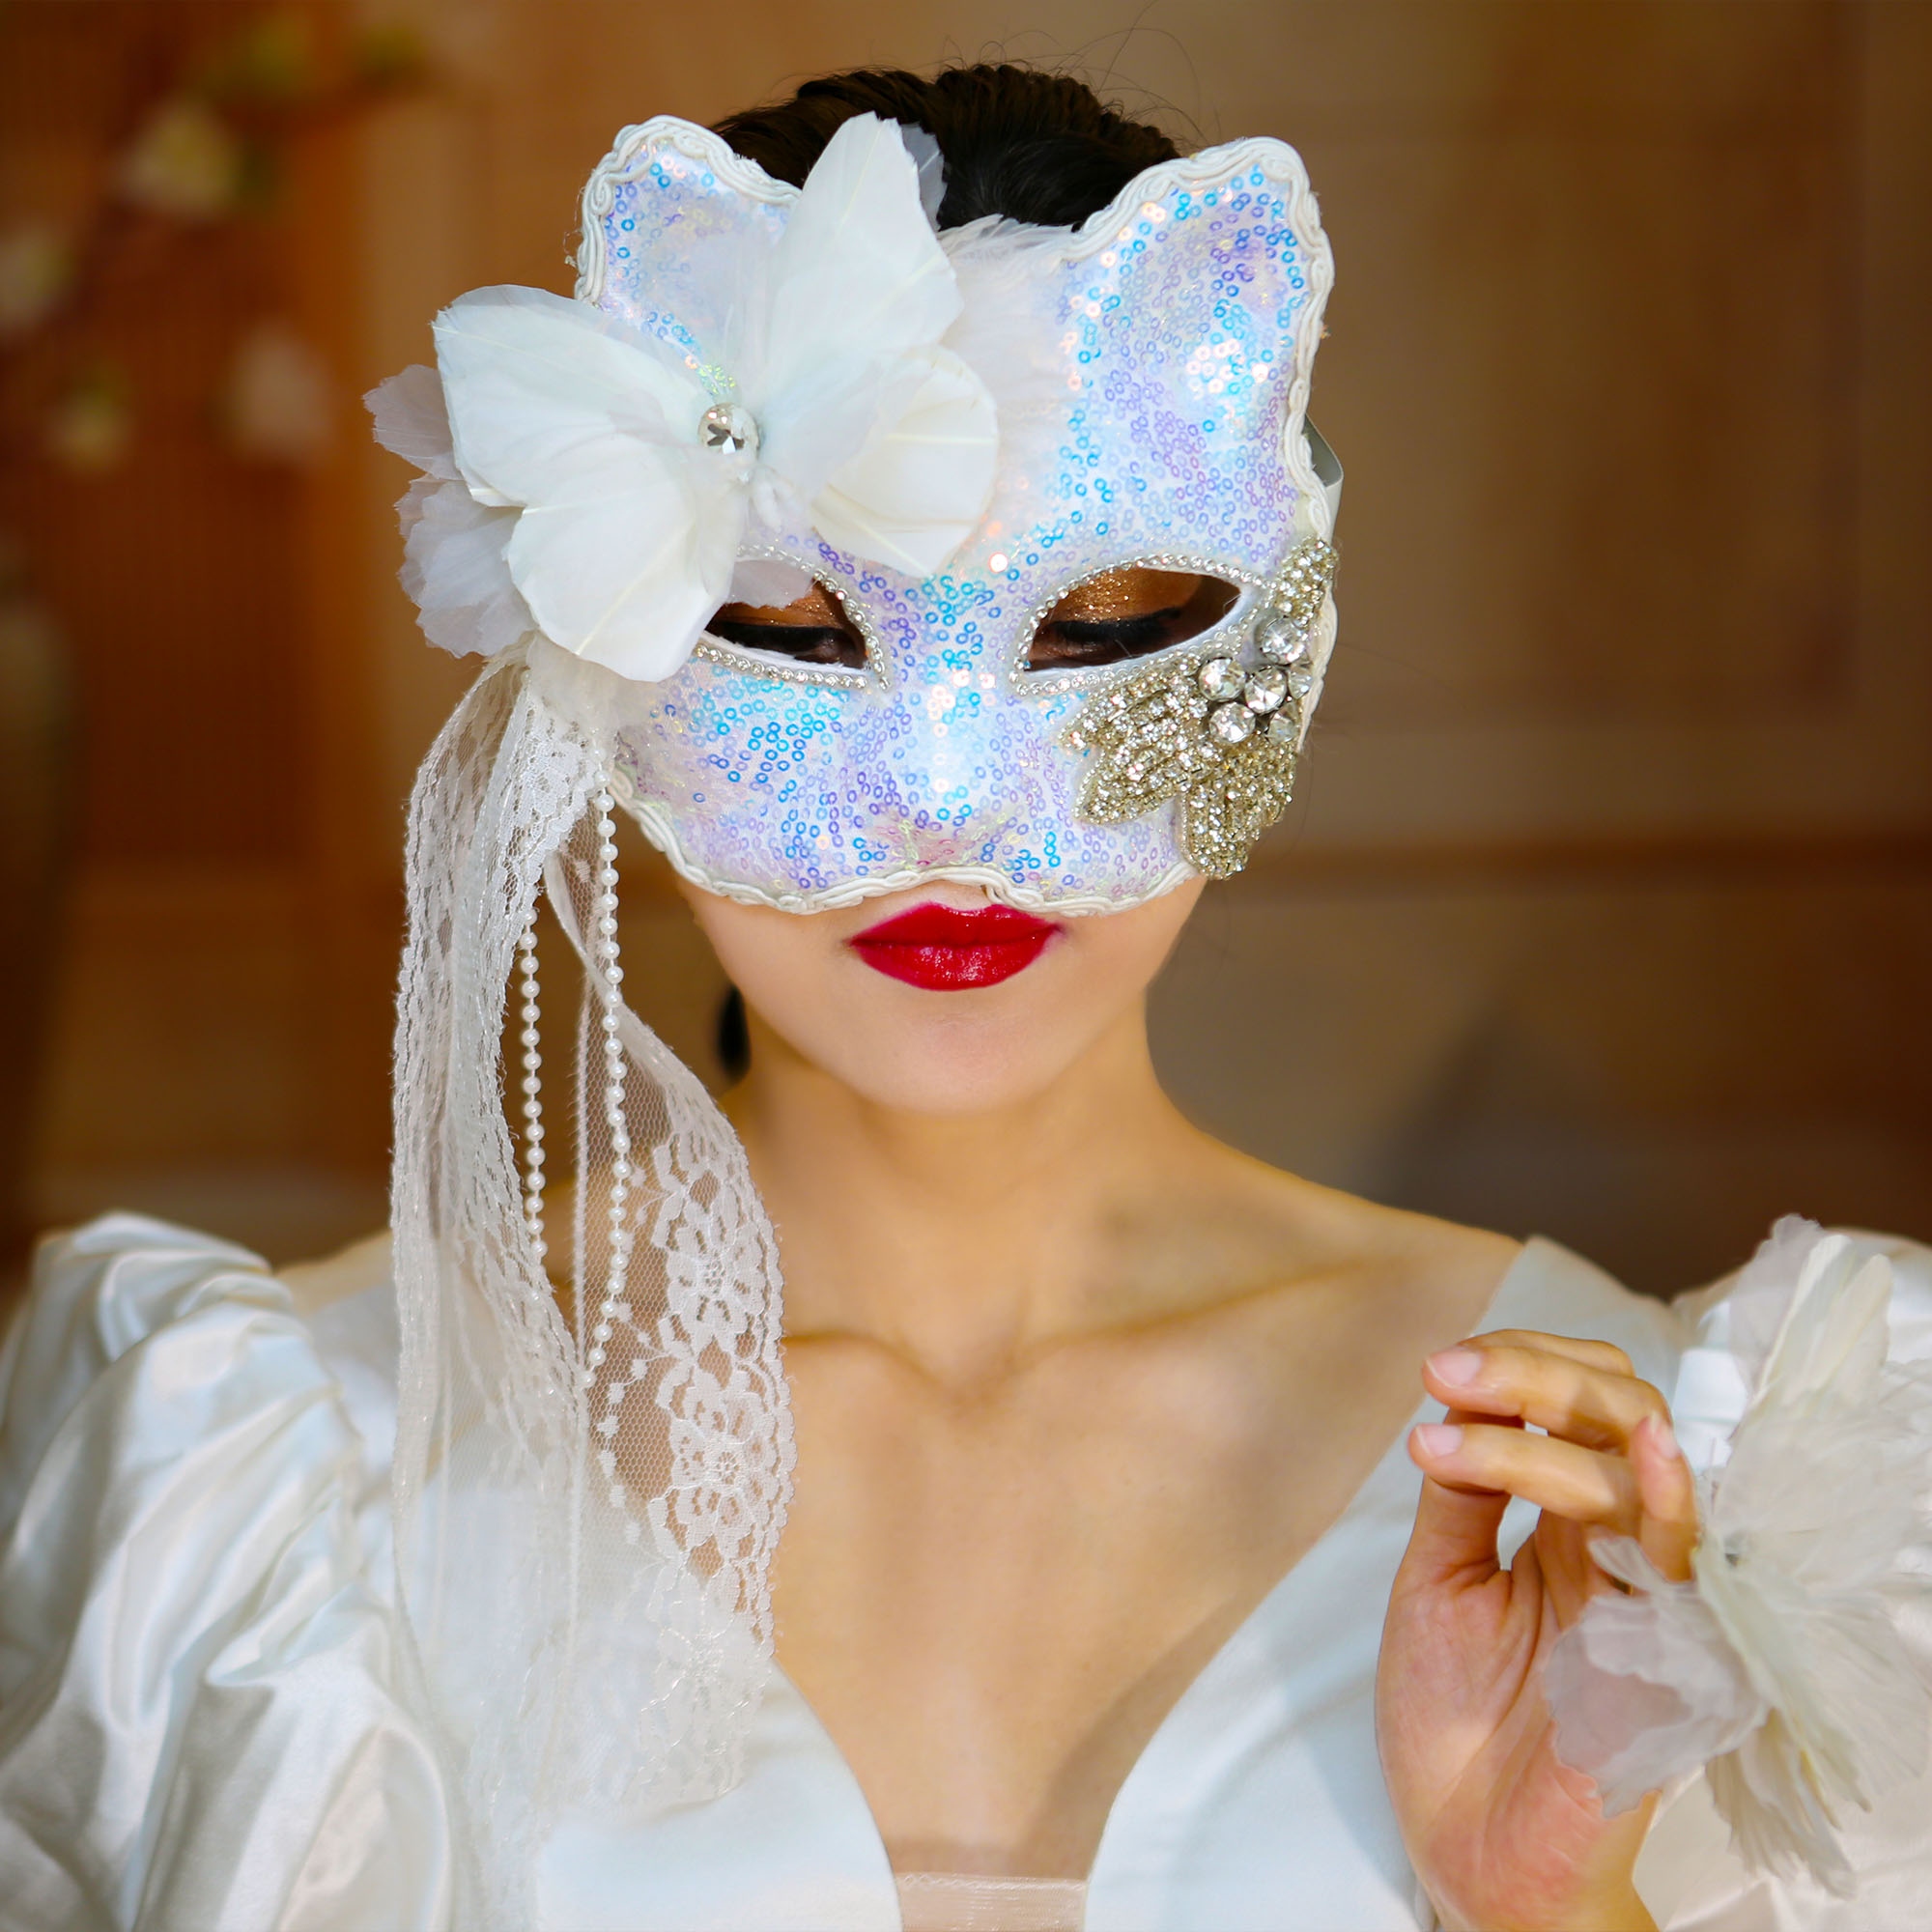 抖音直播 威尼斯猫女面具蒙面歌王舞台假面纱万圣节漫展和风日式